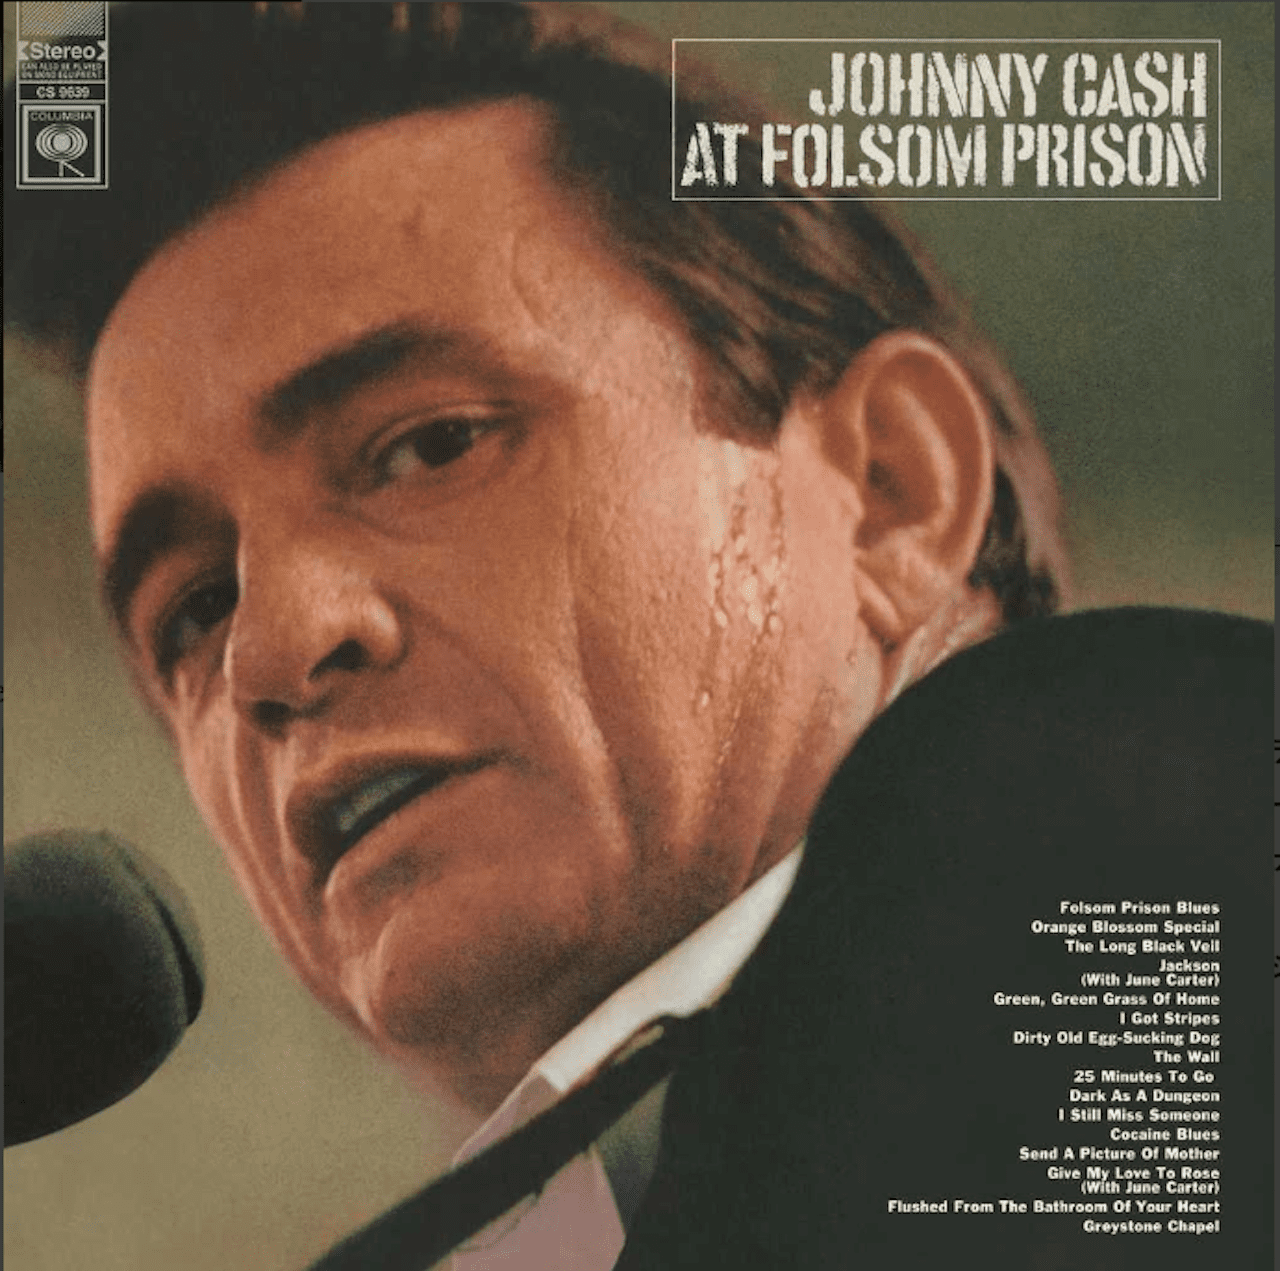 「カントリー界のアウトロー、ジョニー・キャッシュの運命的な刑務所慰問ライブです」At Folsom Prison : Johnny Cash /  アット・フォーサム・プリズン : ジョニー・キャッシュ - Shin 音と音楽と日常